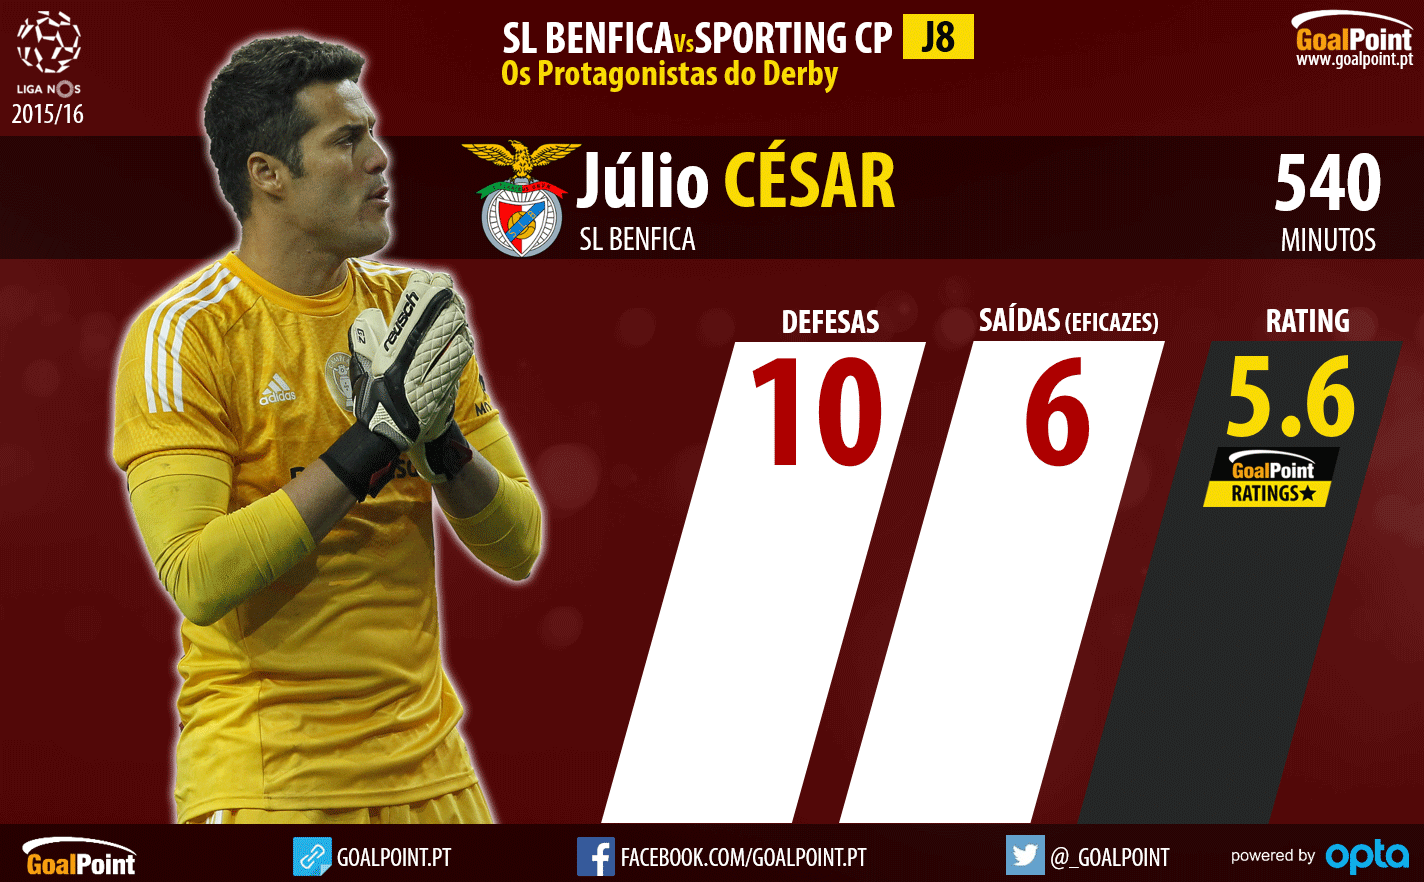 Benfica - Sporting Liga NOS 2015/16 - As figuras que podem fazer a diferença - Júlio César